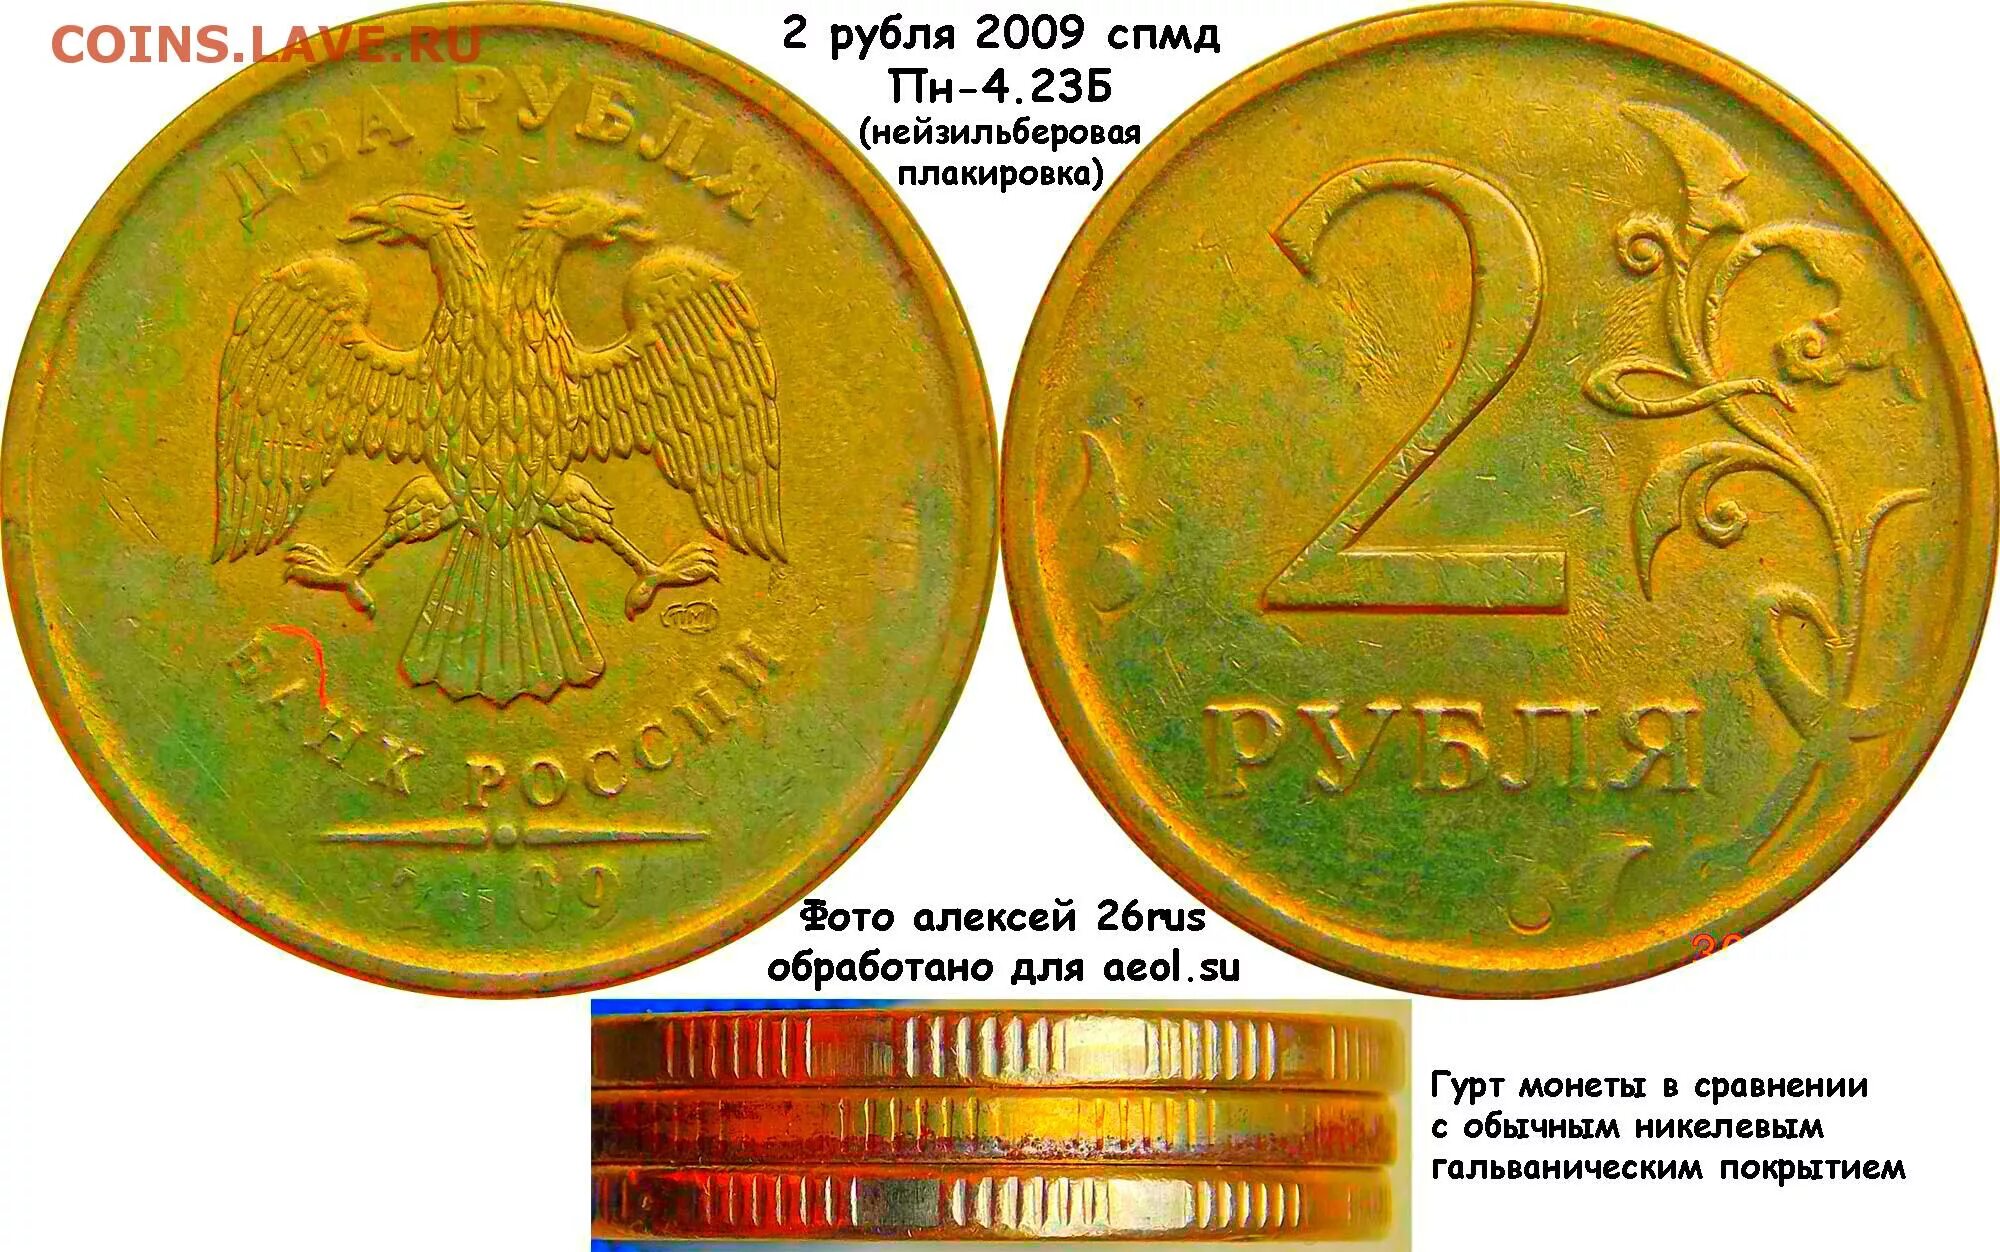 Тон коин цена на сегодня рублях. 2 Рубля 2009 СПМД. 2 Рубля 2009 г. СПМД, магнитные, сталь с мельхиоровой плакировкой.. Монета 2 рубля. Плакировка монет.